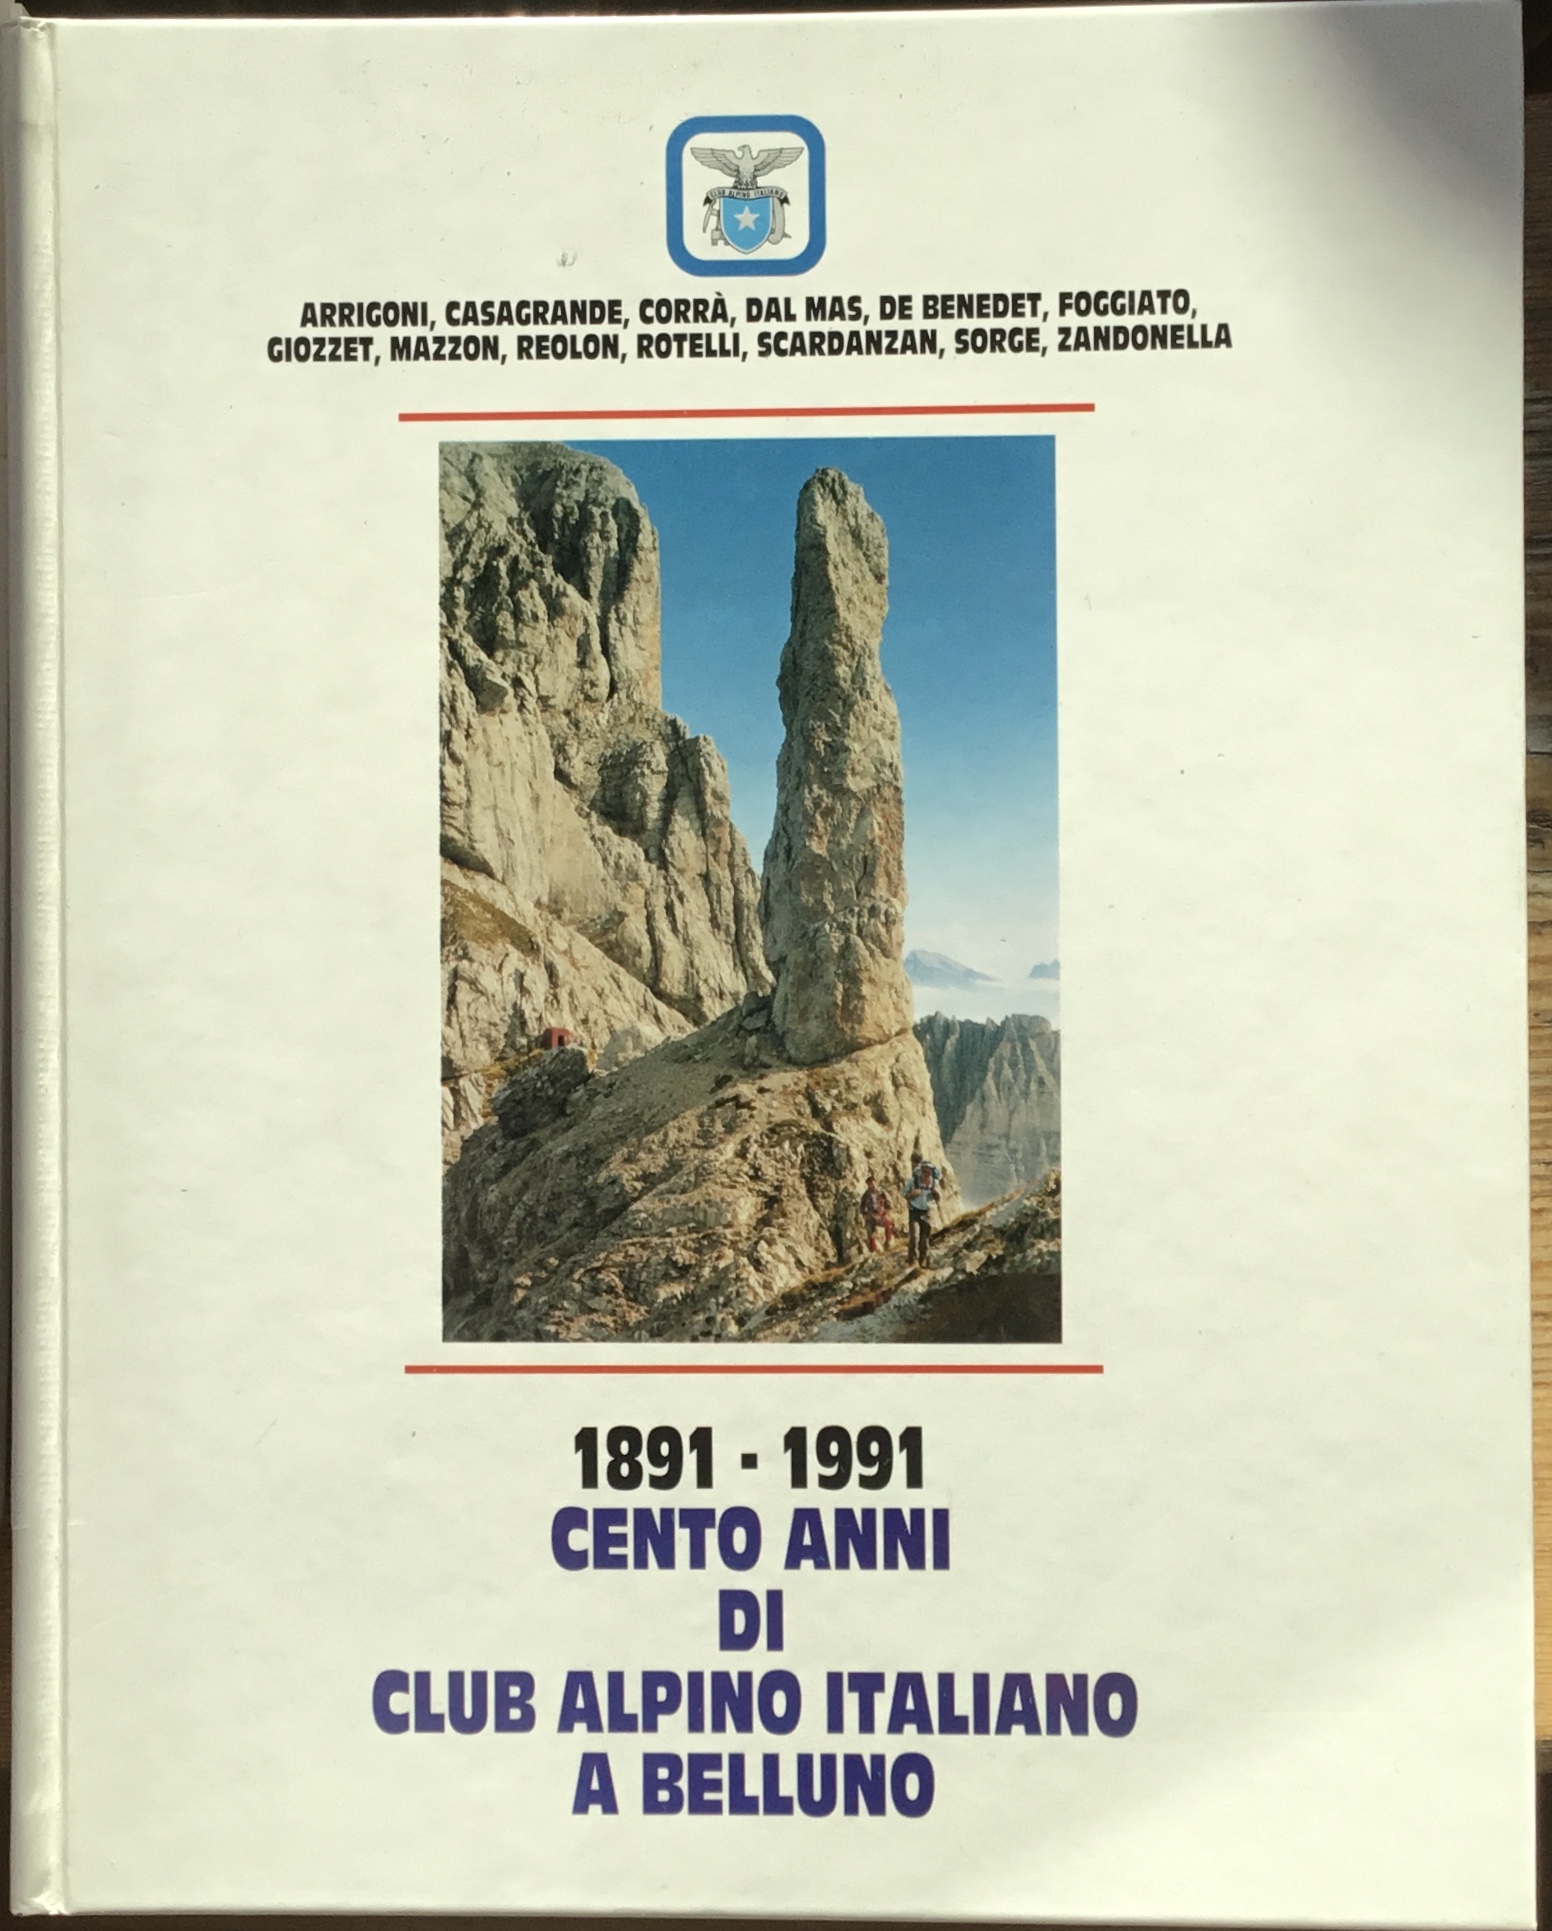 1891-1991 Cento anni di Club Alpino Italiano a Belluno